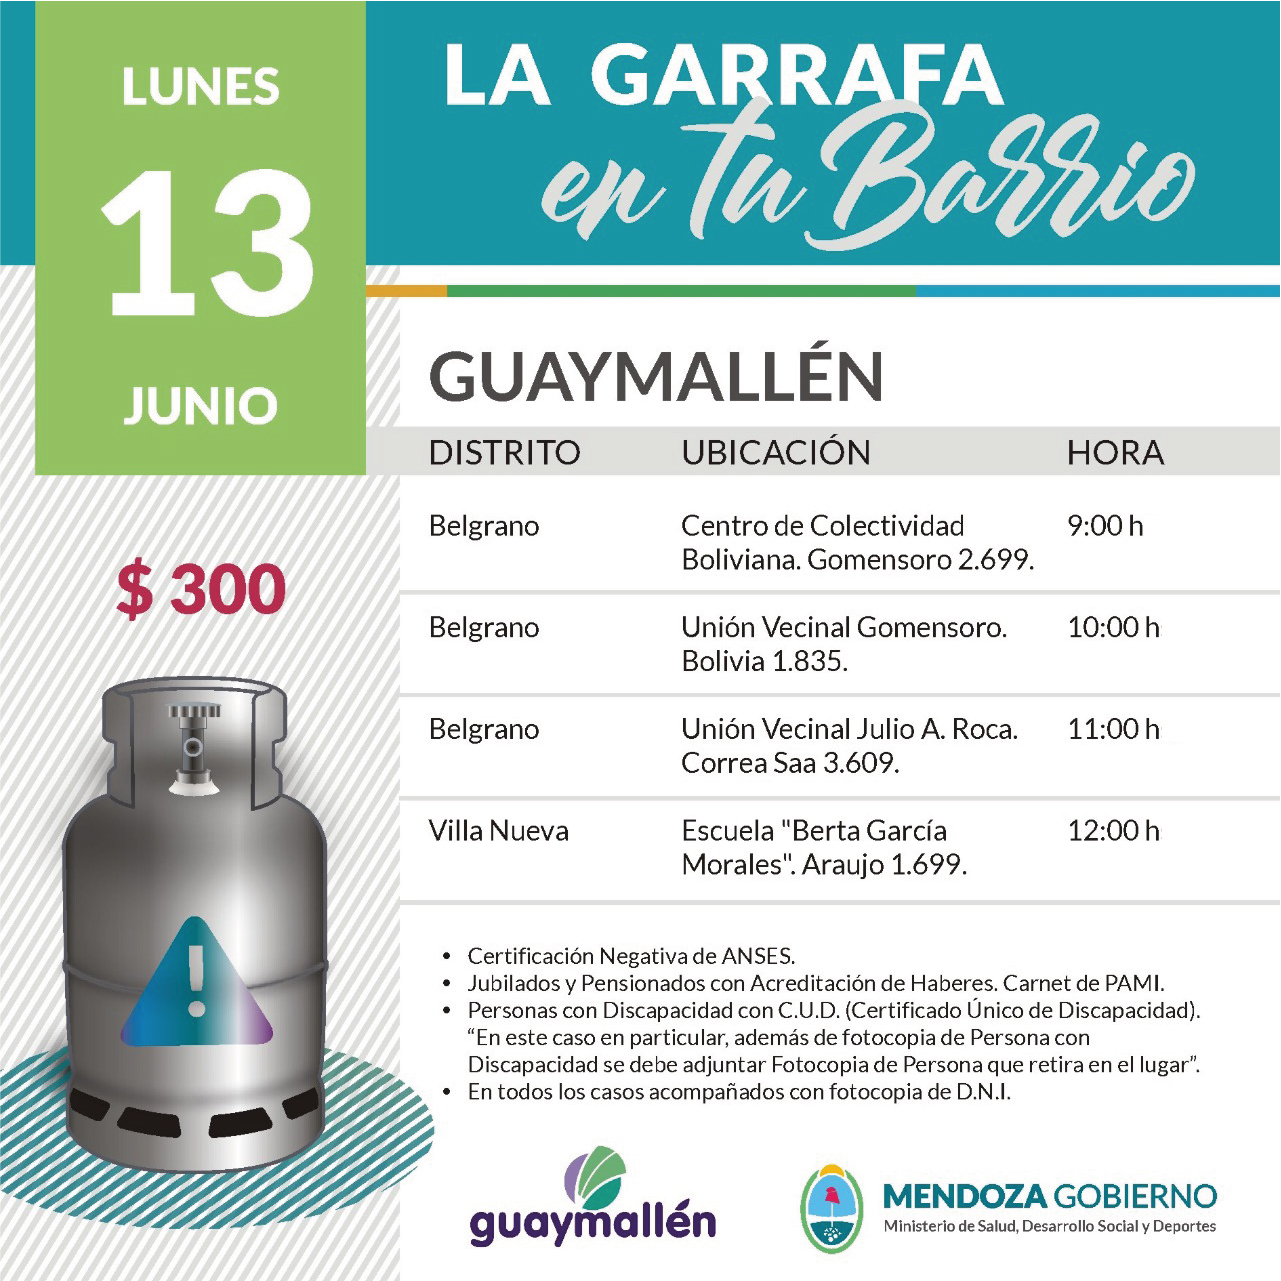 La Garrafa en tu Barrio con subsidio provincial. 13 de junio.